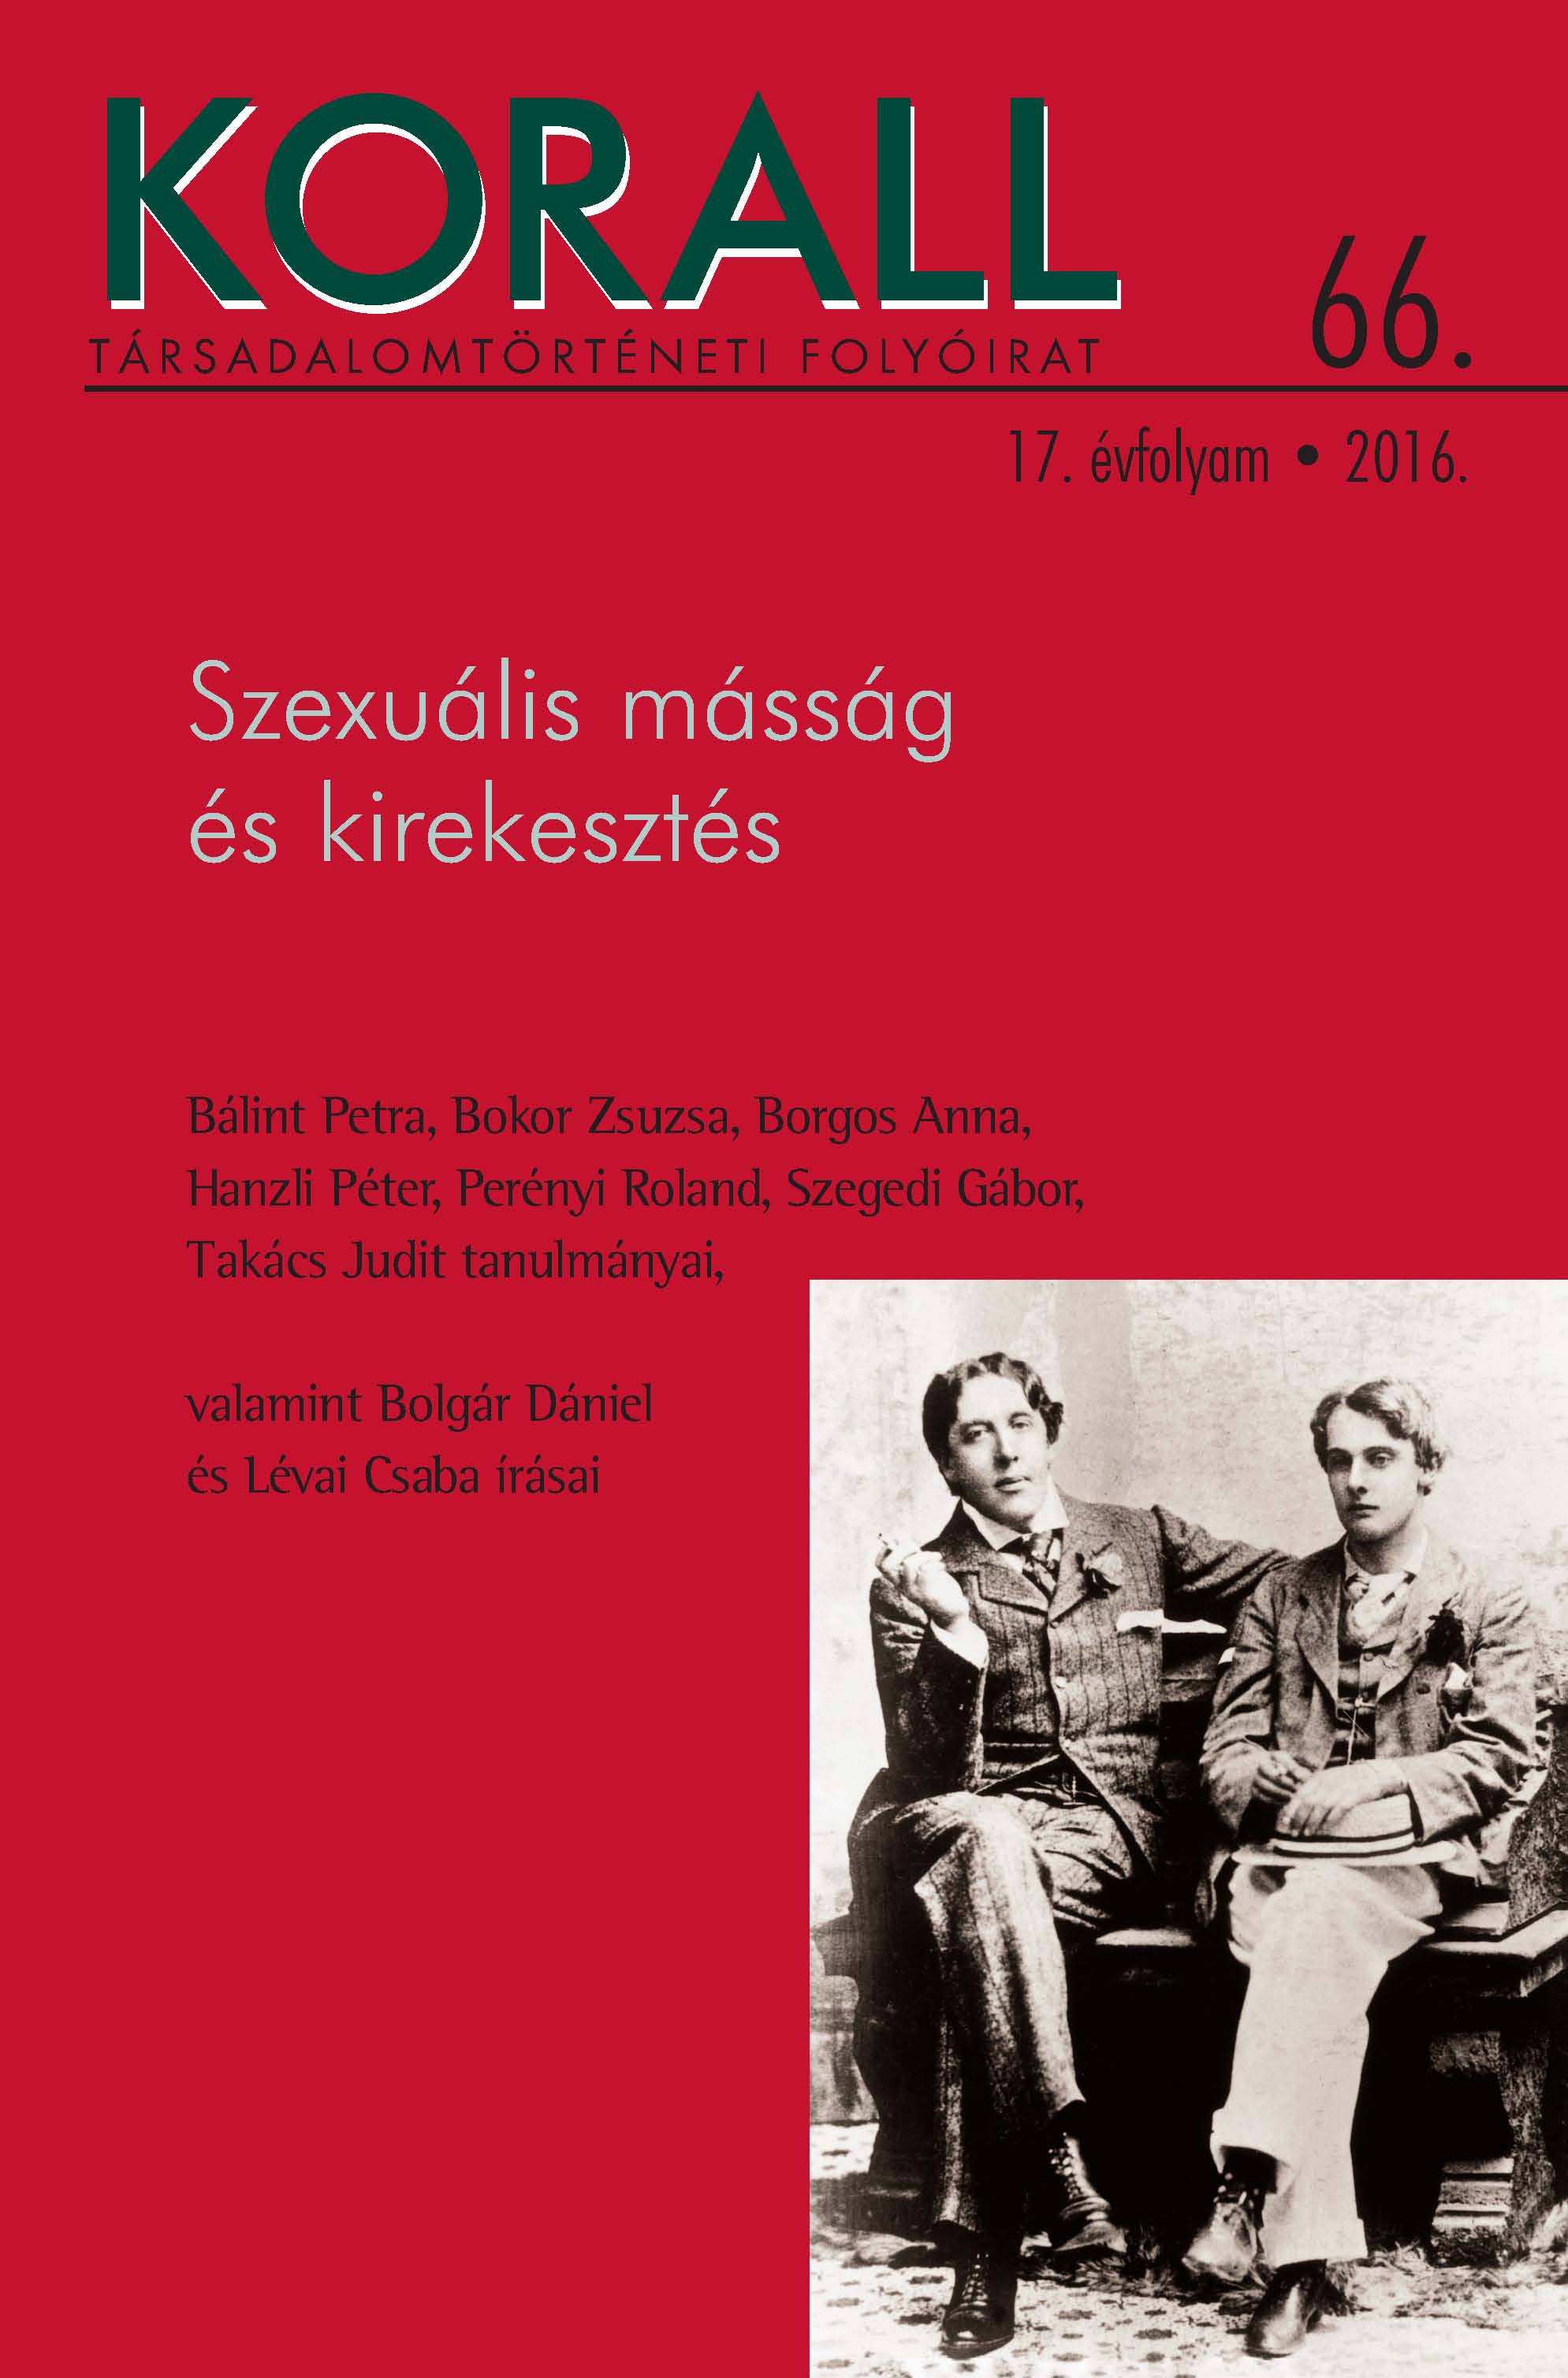 Book Review: Weisz Boglárka: A királyketteje és az ispán harmada.
Vámok és vámszedés Magyarországon a középkor első felében Cover Image